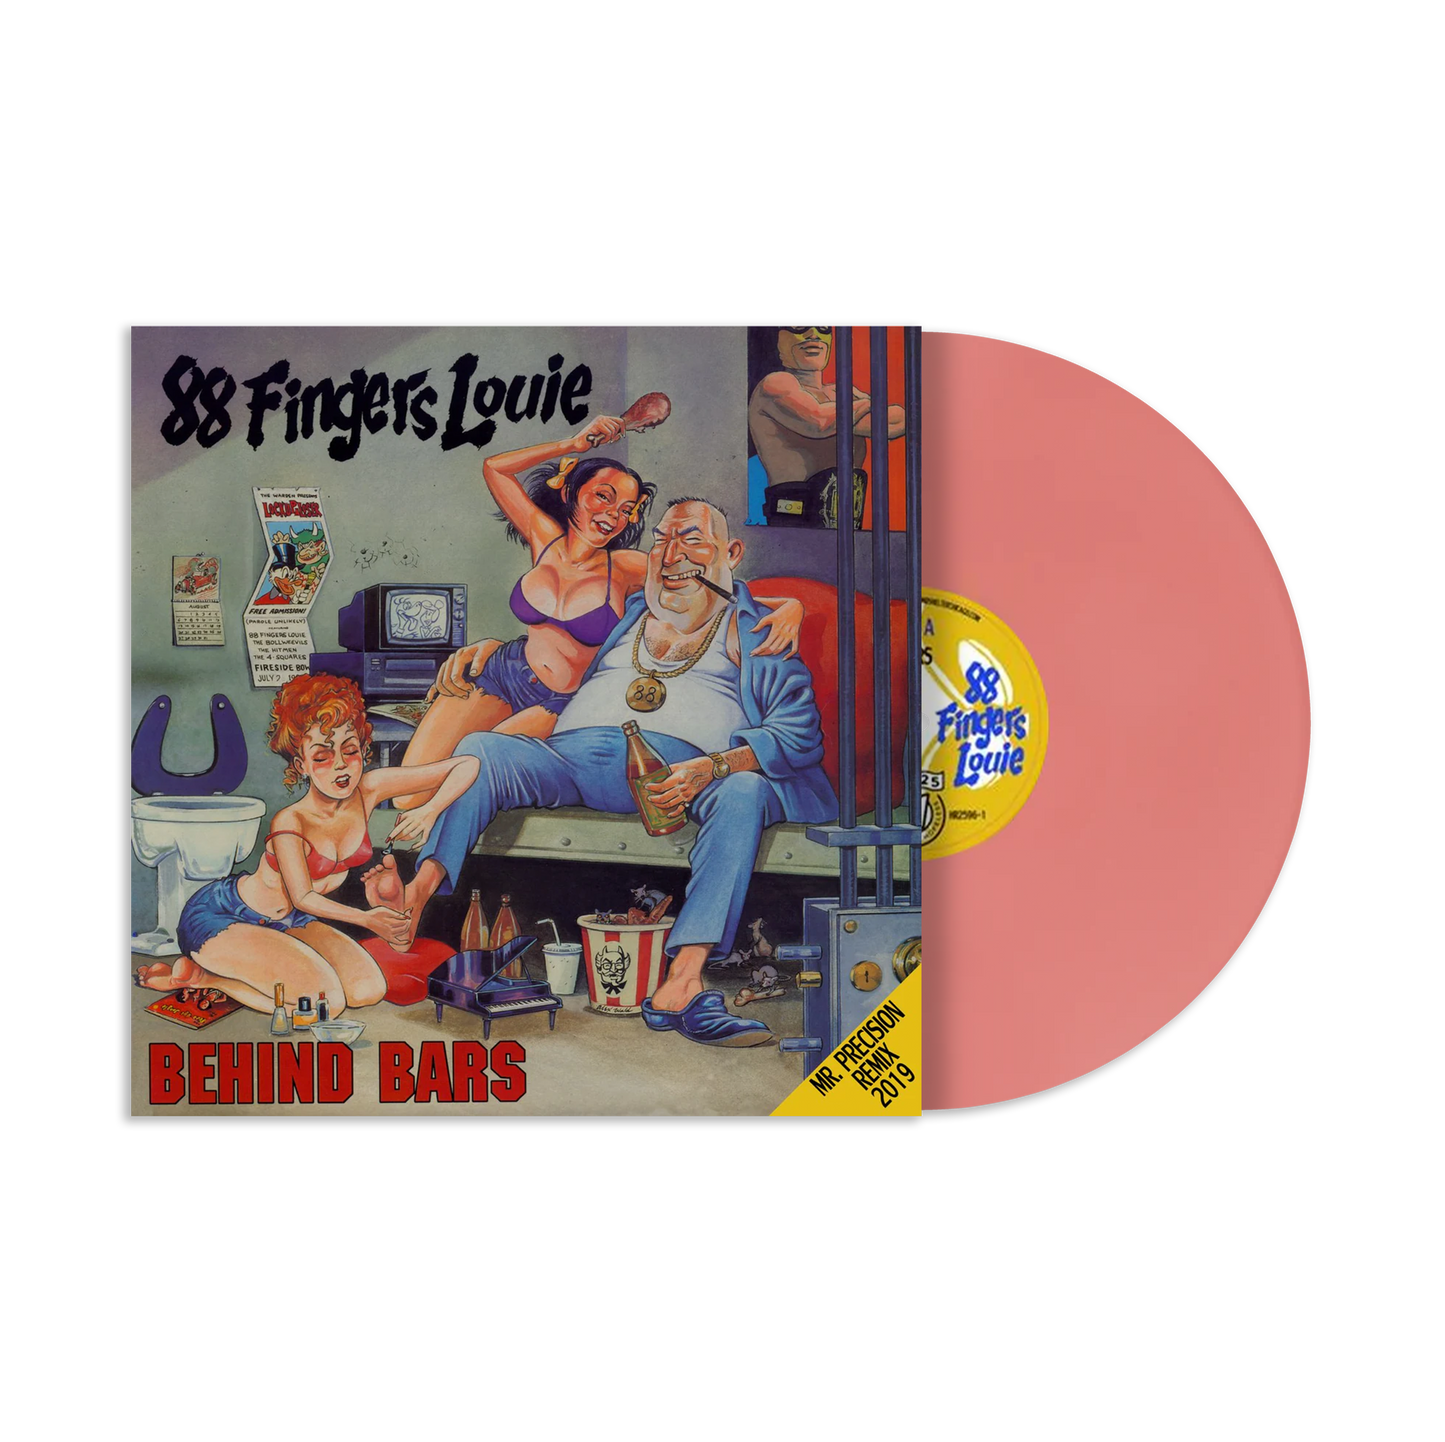 88 Fingers Louie "Behind Bars" LP